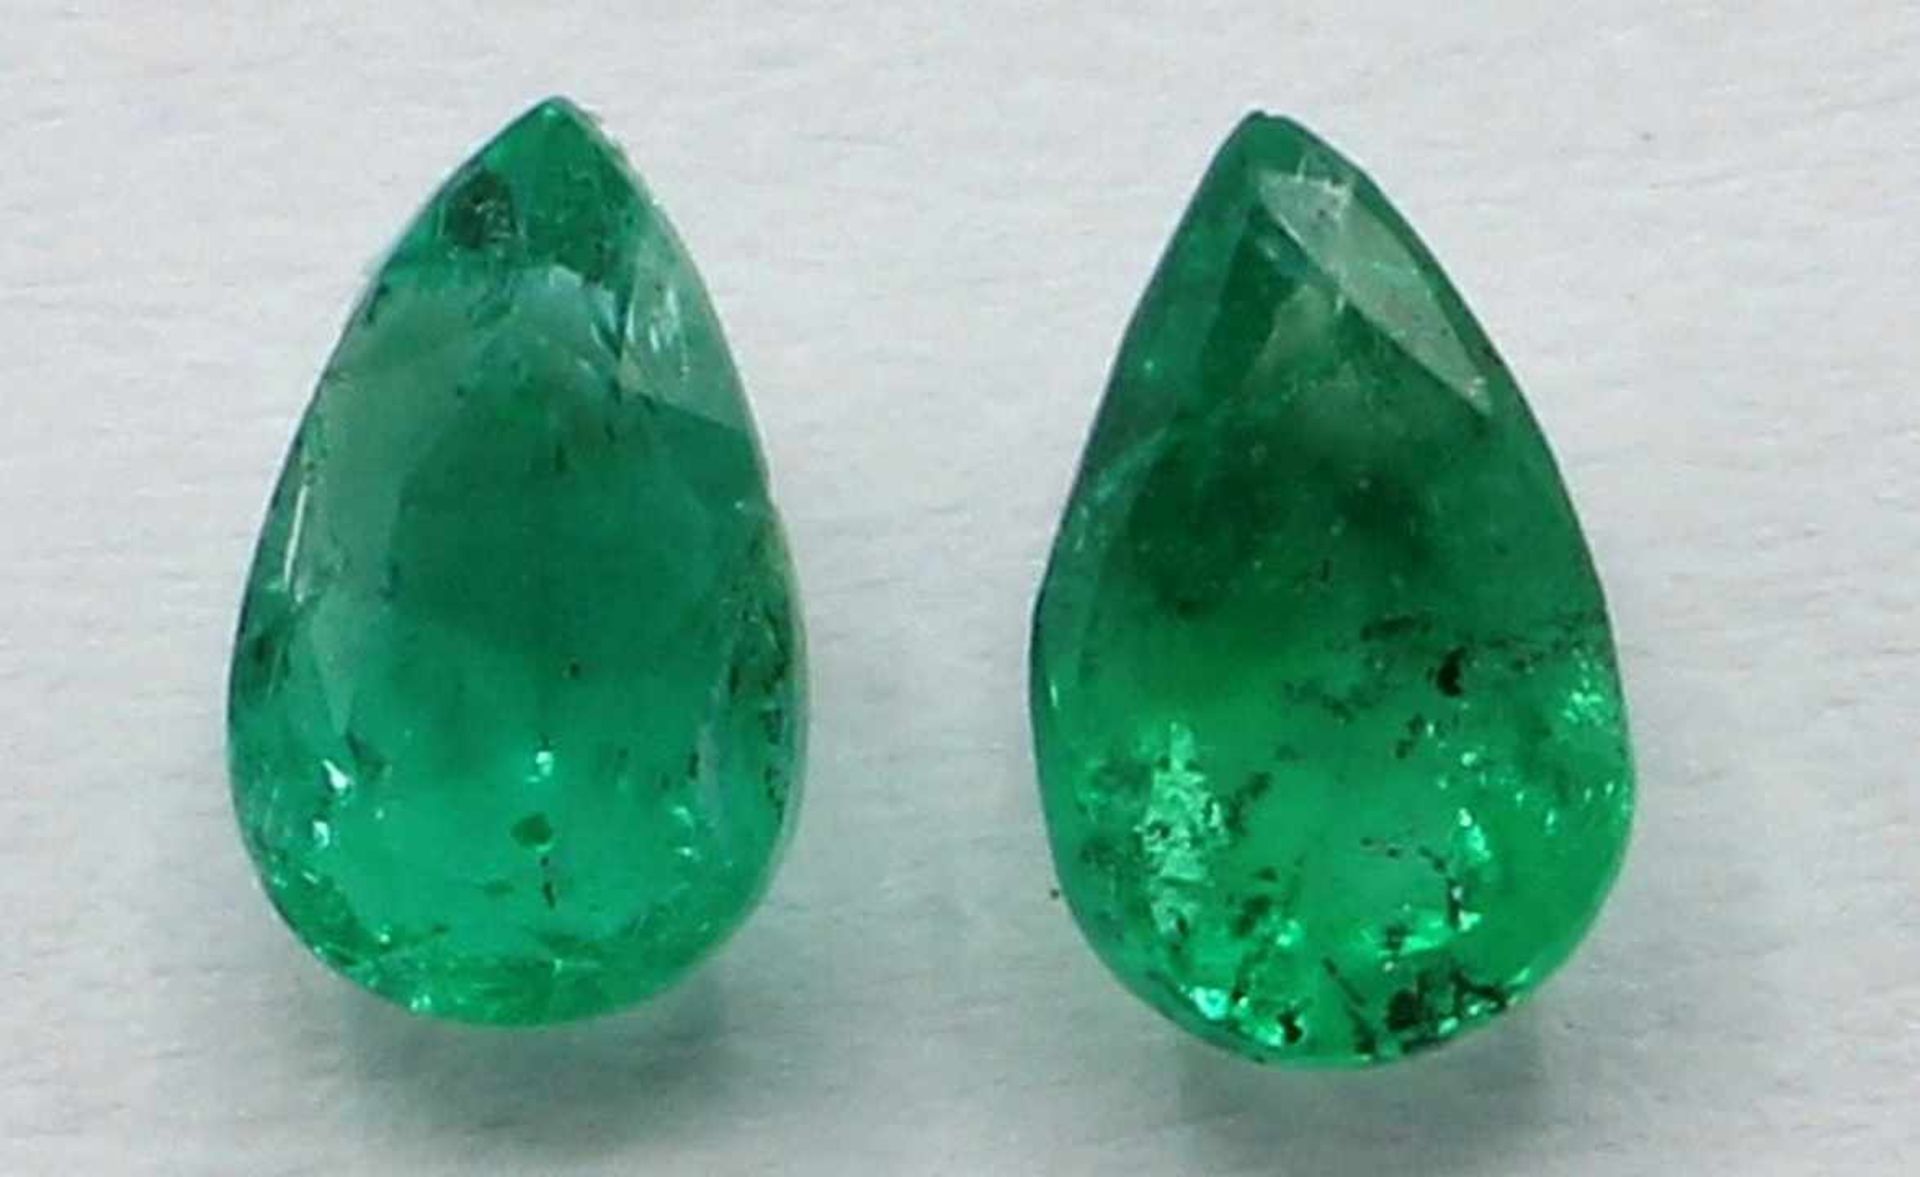 Lose Edelsteine - Paar Smaragde zus. 0,49 ct., Maße ca. 5 - 3 mm, Tropfen facettiert,